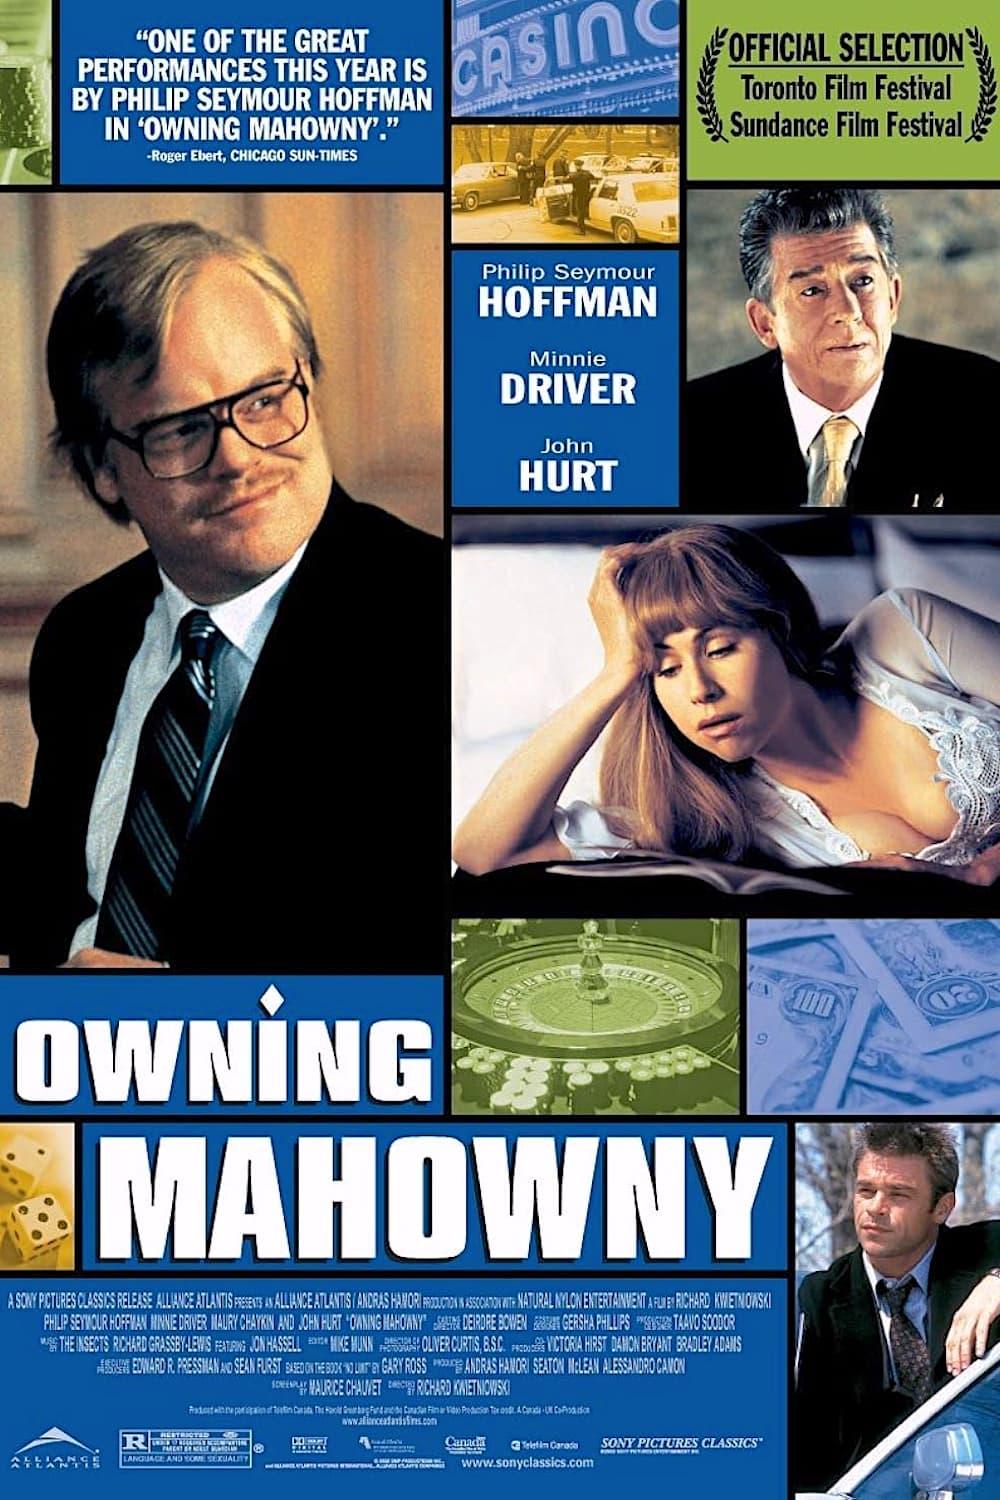 Owning Mahowny poster